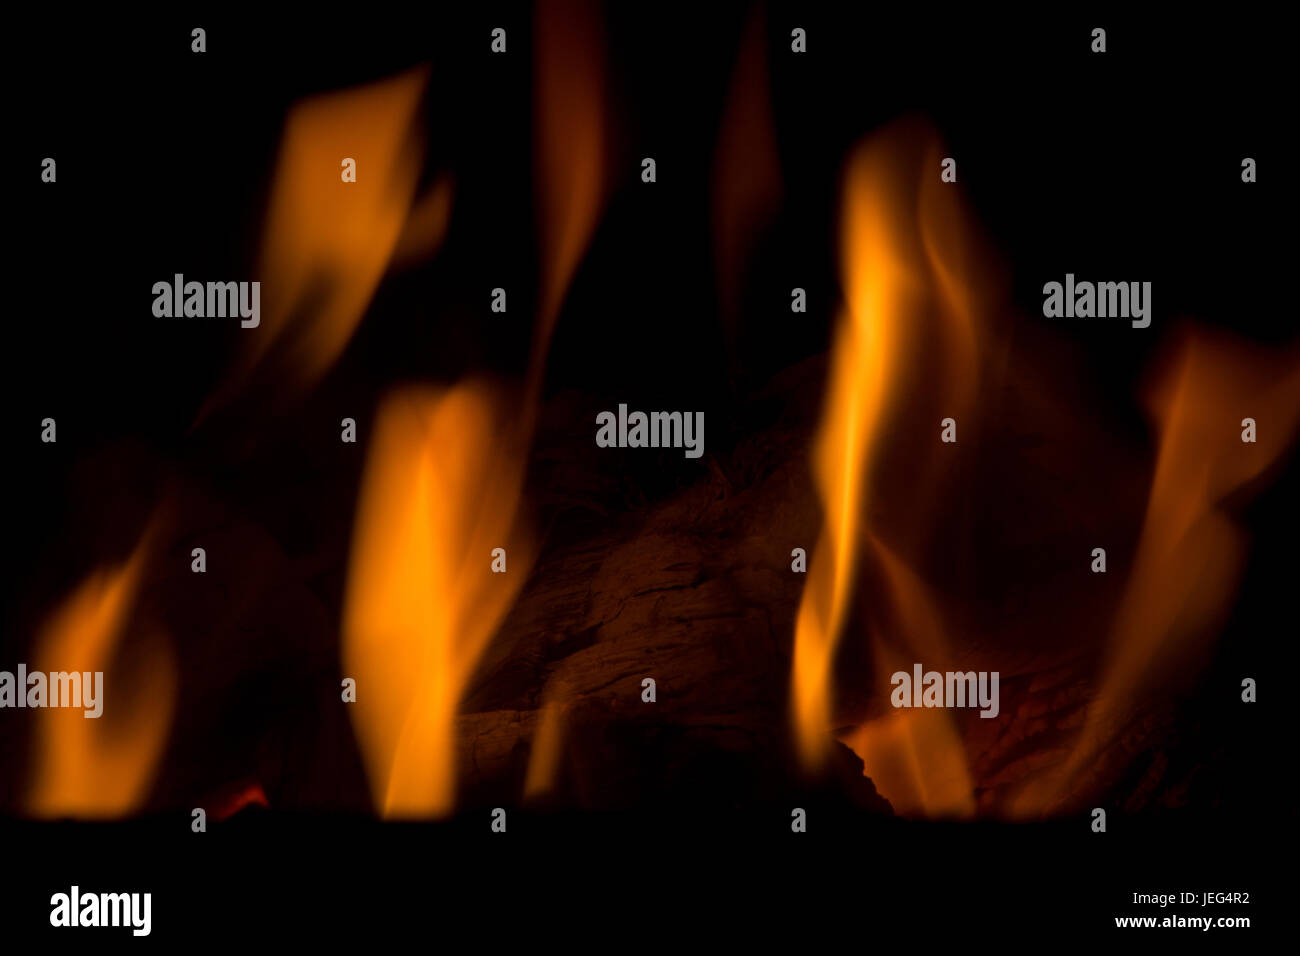 Image abstraite de flammes contre une backgrouind sombre. En utilisant votre imagination, vous pouvez presque voir les formes des créatures différentes dans l'incendie. Banque D'Images